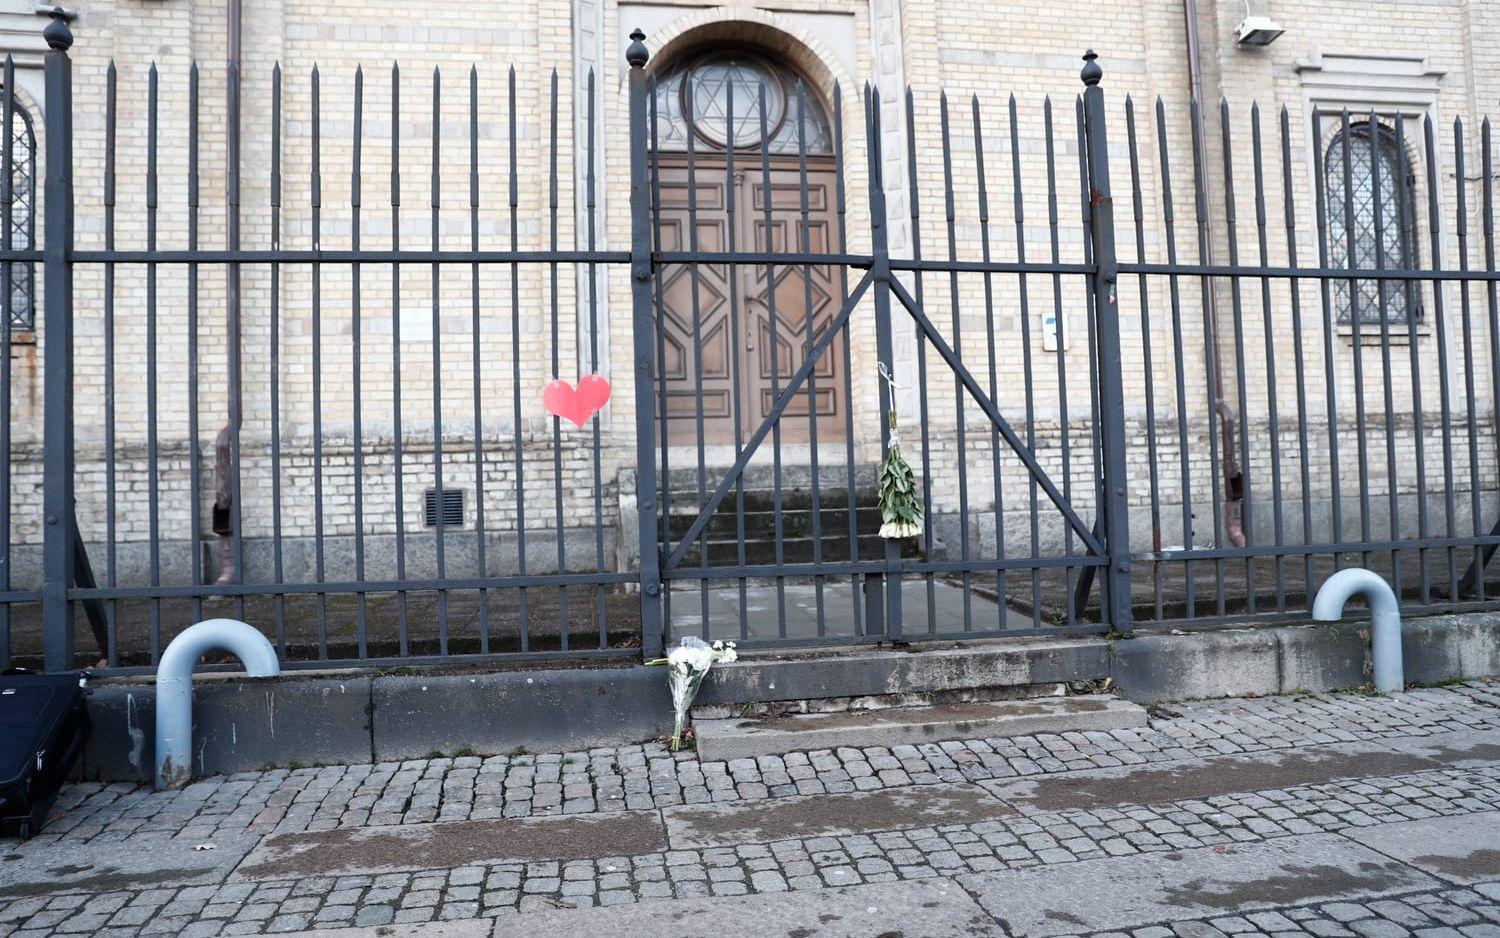 Nätverket "Tillsammans för västra Göteborg" la upp ett event på Facebook för att "Kärleksbomba synagogan". Bild: Anders Ylander.